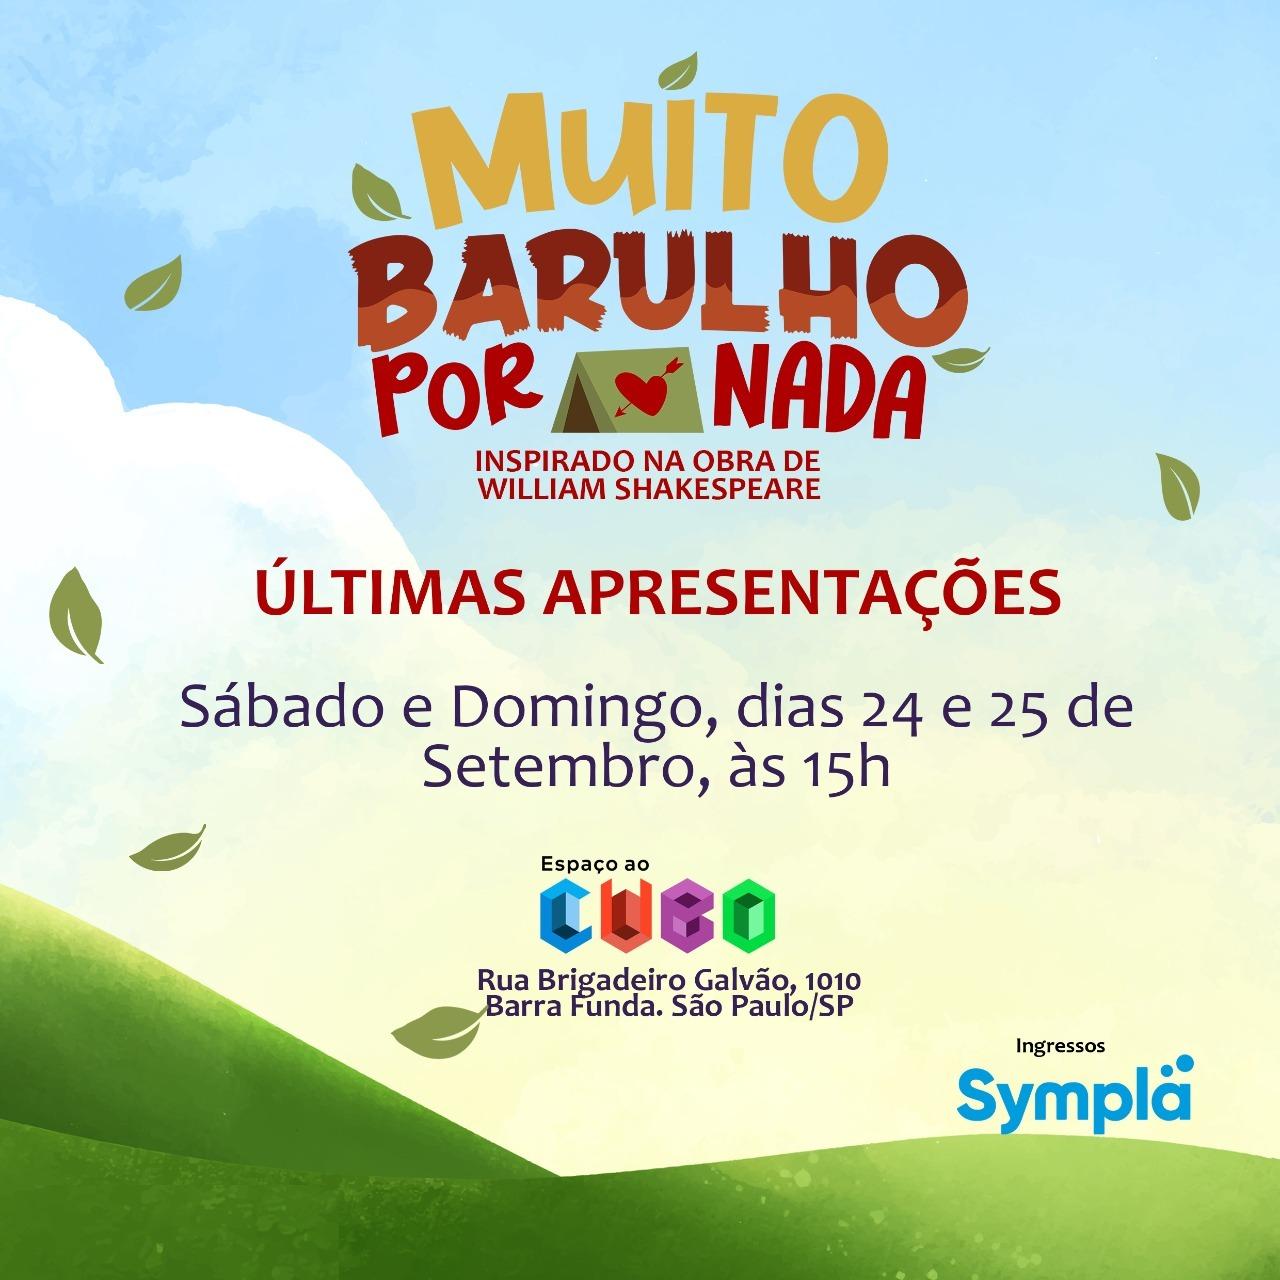 Espetáculo “Muito Barulho por Nada” encerra temporada em São Paulo